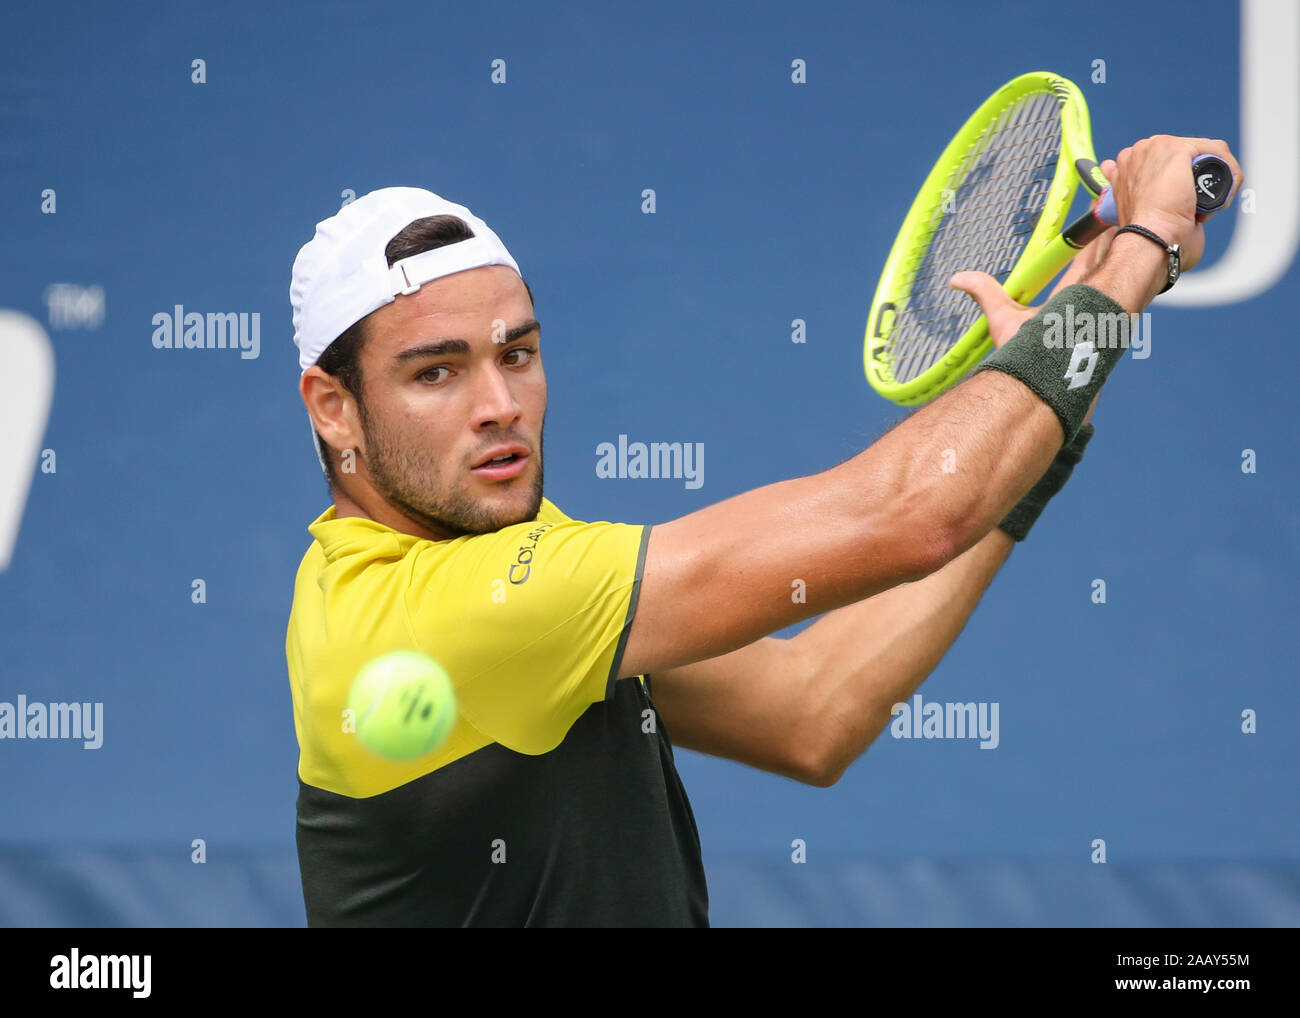 Joueur de tennis Italien Matteo Berrettini (ITA) jouer a sauvé, tourné  pendant le tournoi de tennis de l'US Open 2019, New York City, New York  State, USA Photo Stock - Alamy